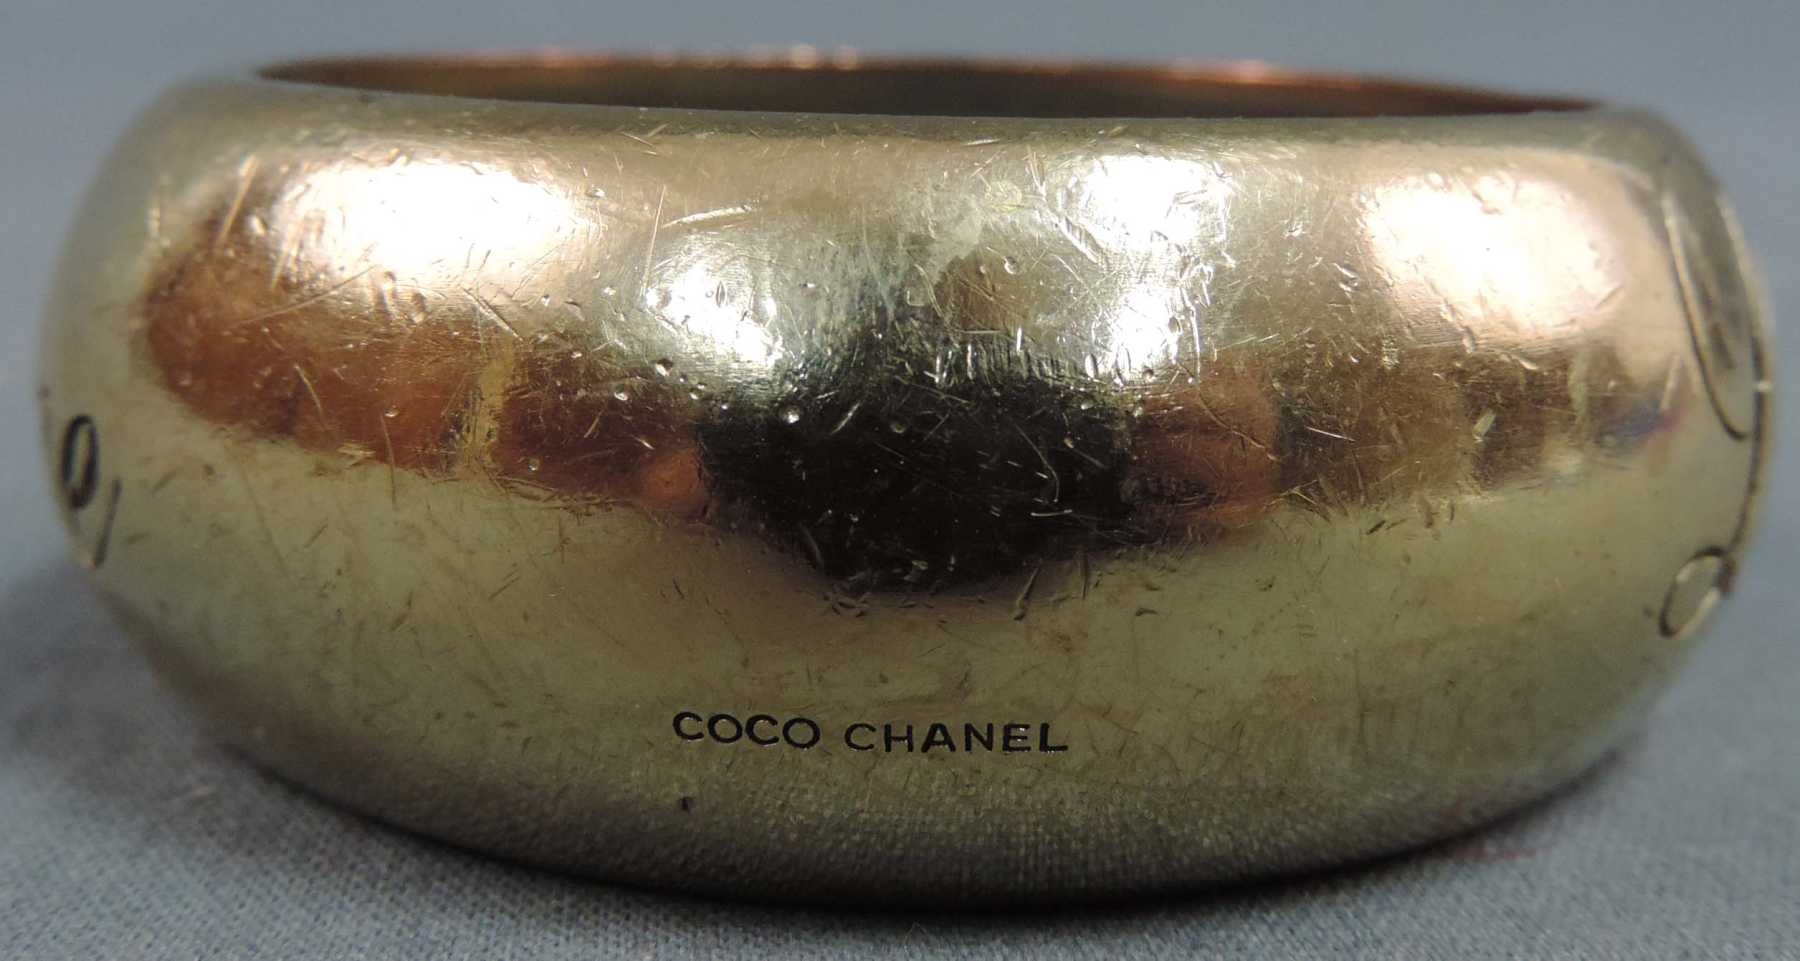 Chanel, Made in France, Armreif. "L'élégance, c'est la ligne". Punze. 64 mm Innendurchmesser. - Image 5 of 5